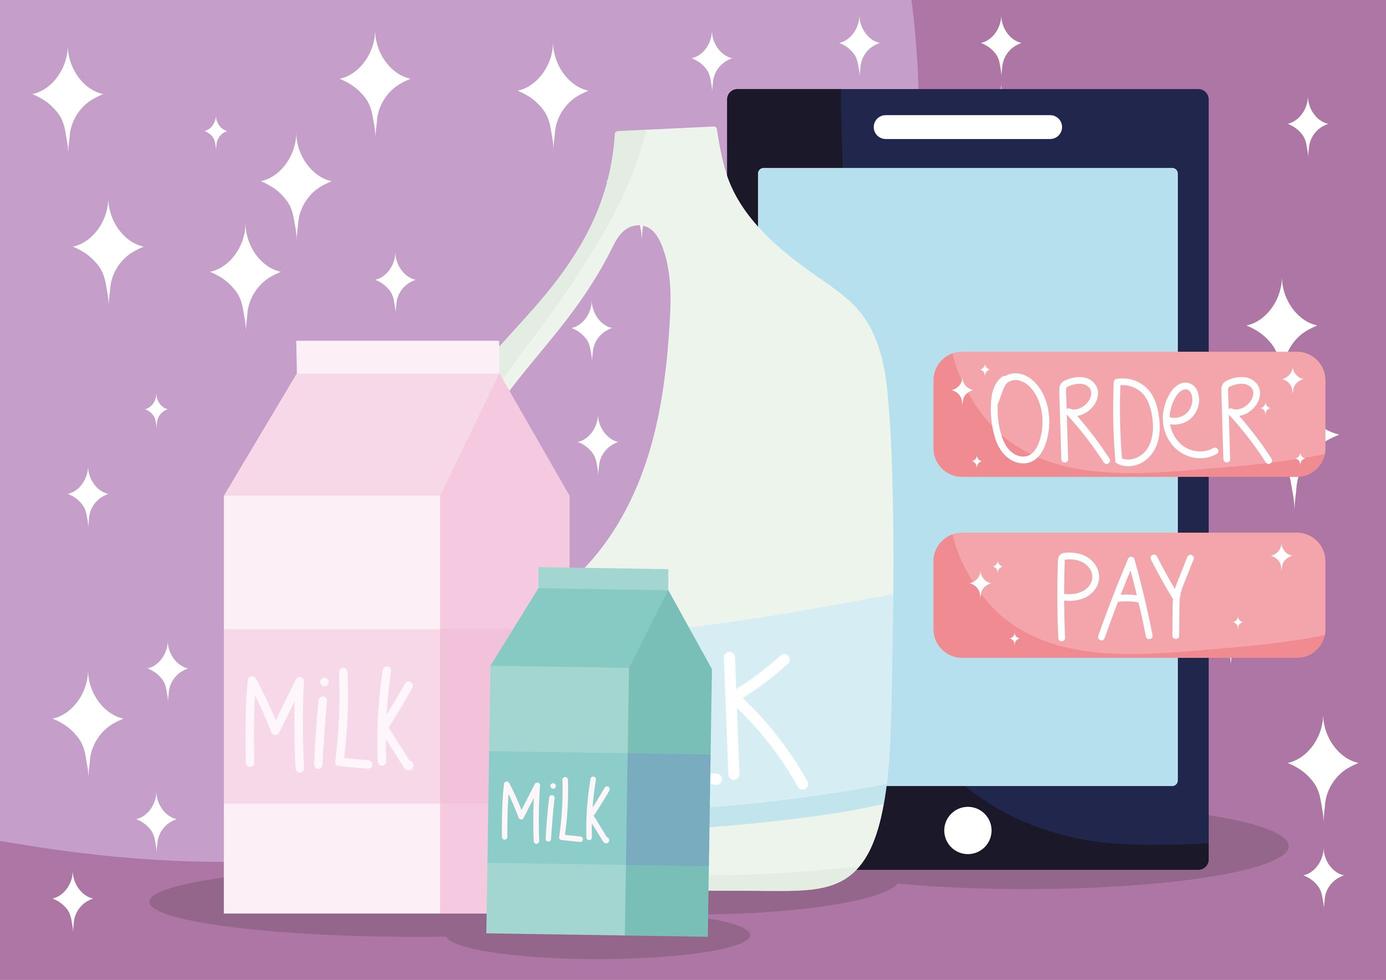 banner de mercado online com produtos lácteos frescos vetor